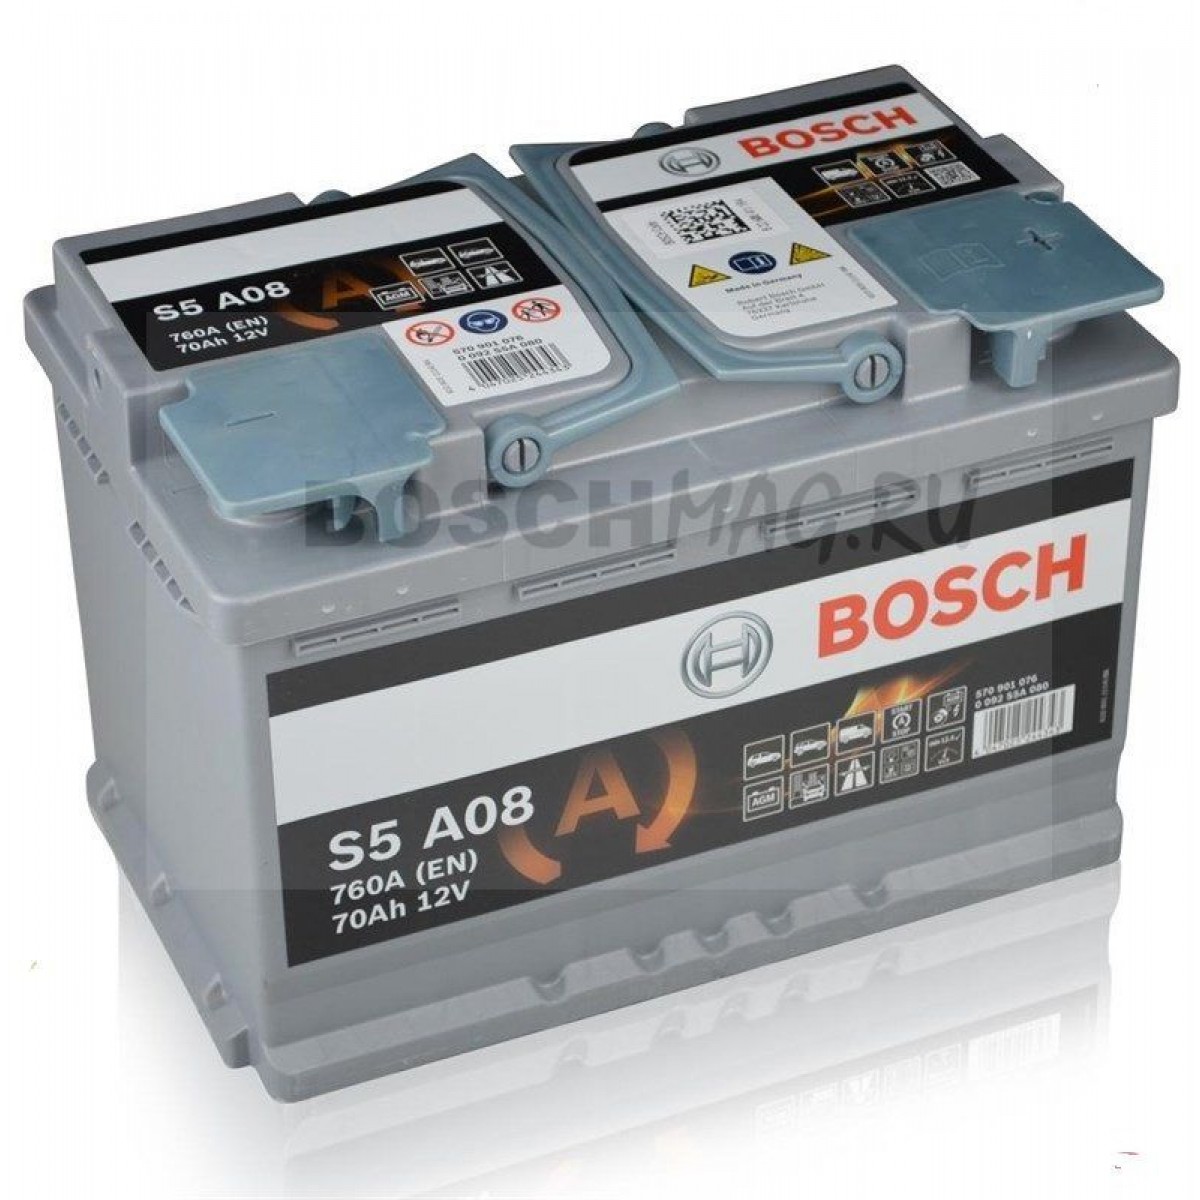 Легковой аккумулятор. Bosch AGM 70ah. Аккумулятор AGM 70ah. Bosch 60 АКБ автомобильный. АКБ 70ah бош.